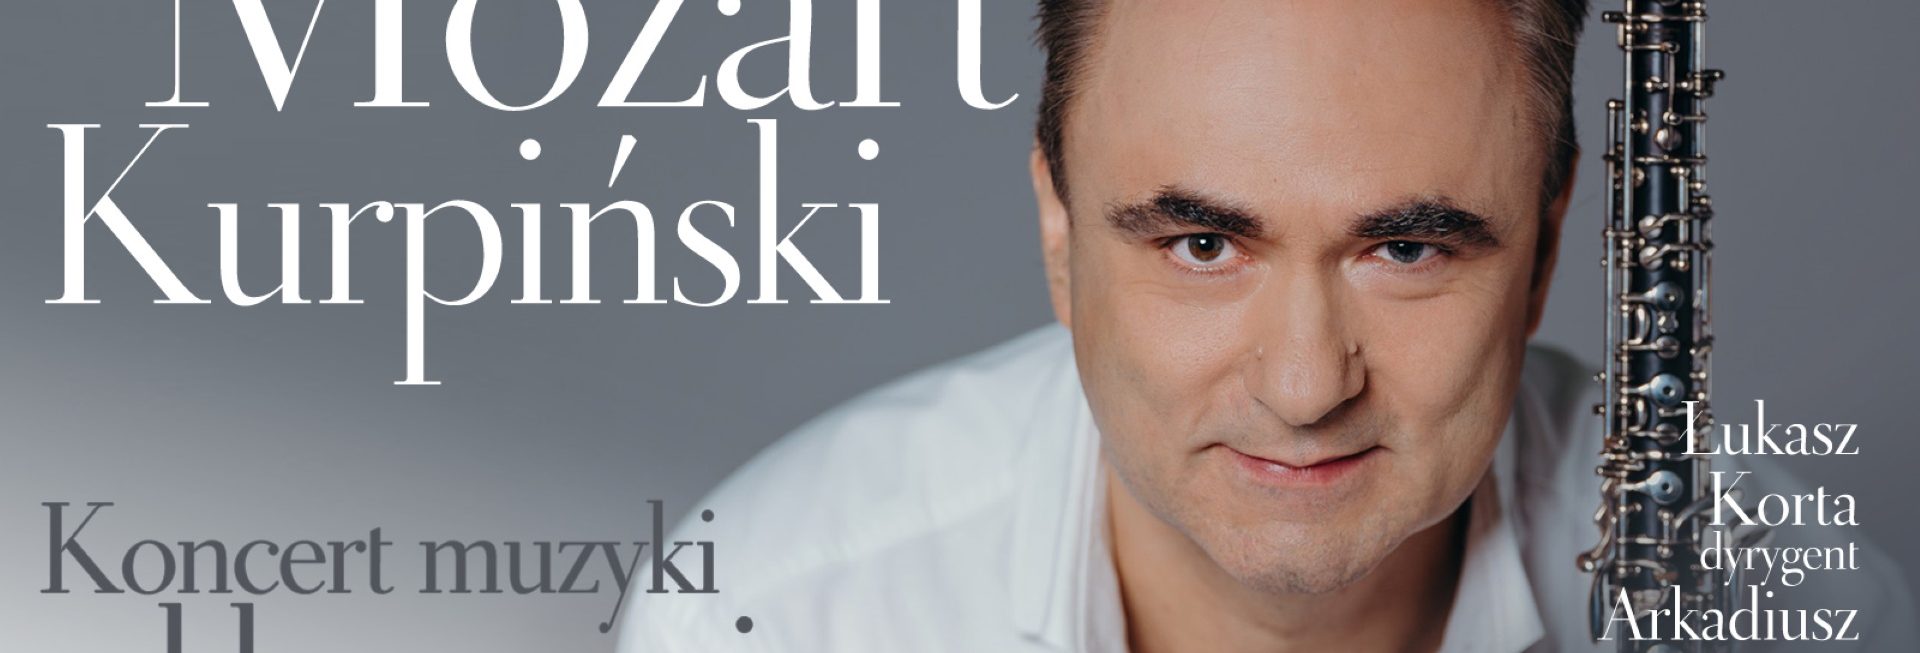 Plakat zapraszający do Olsztyna na koncert muzyki klasycznej Mozart i Kurpiński - Filharmonia Olsztyn 2022.